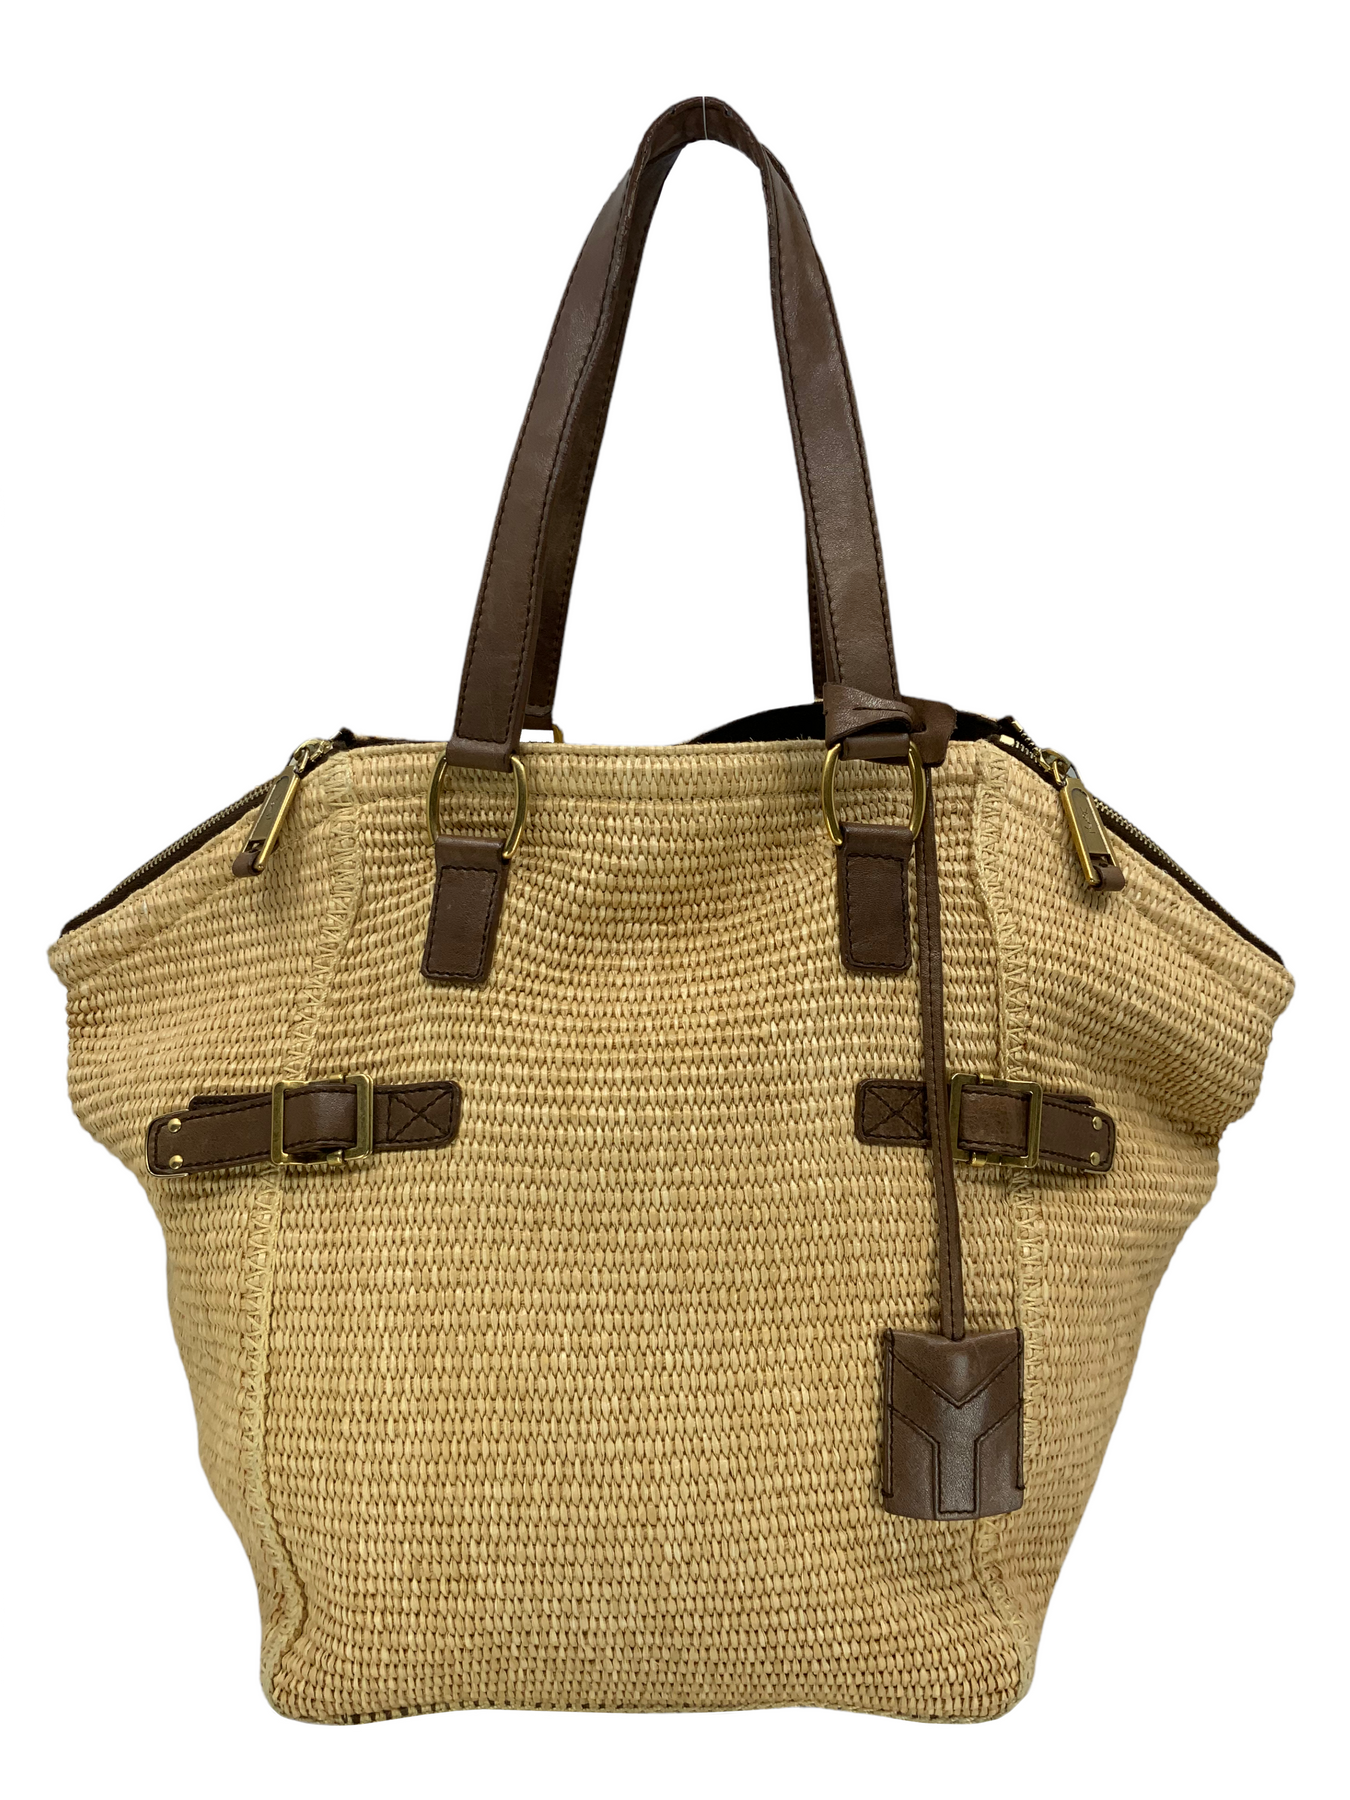 Yves Saint Laurent, Bags, Ysl Raffia Downtown Straw Tote Handbag